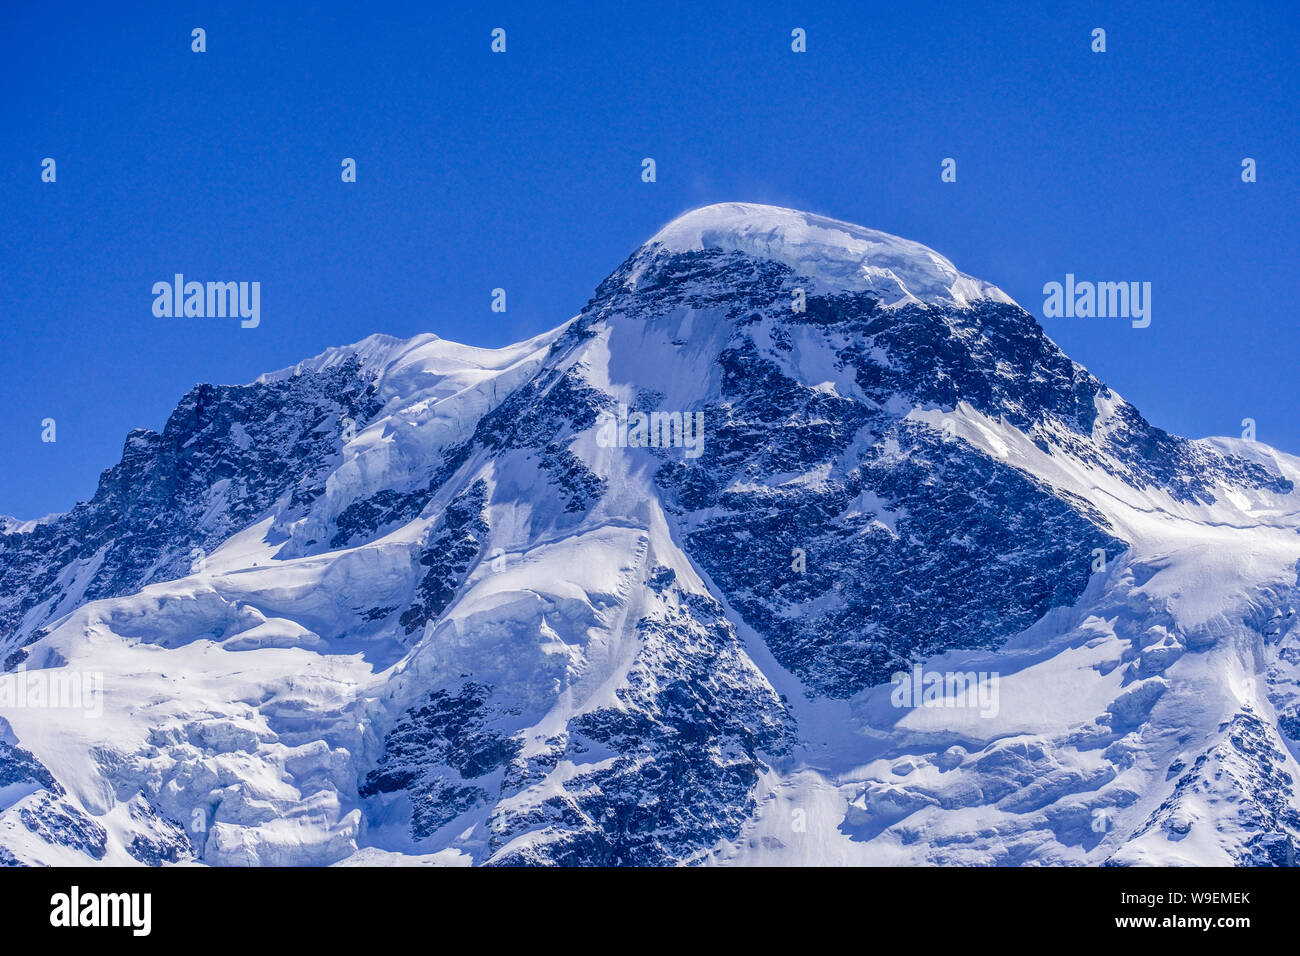 Haut de l'Europe vue par Matterhorn glacier paradise, Zermatt, Suisse Banque D'Images